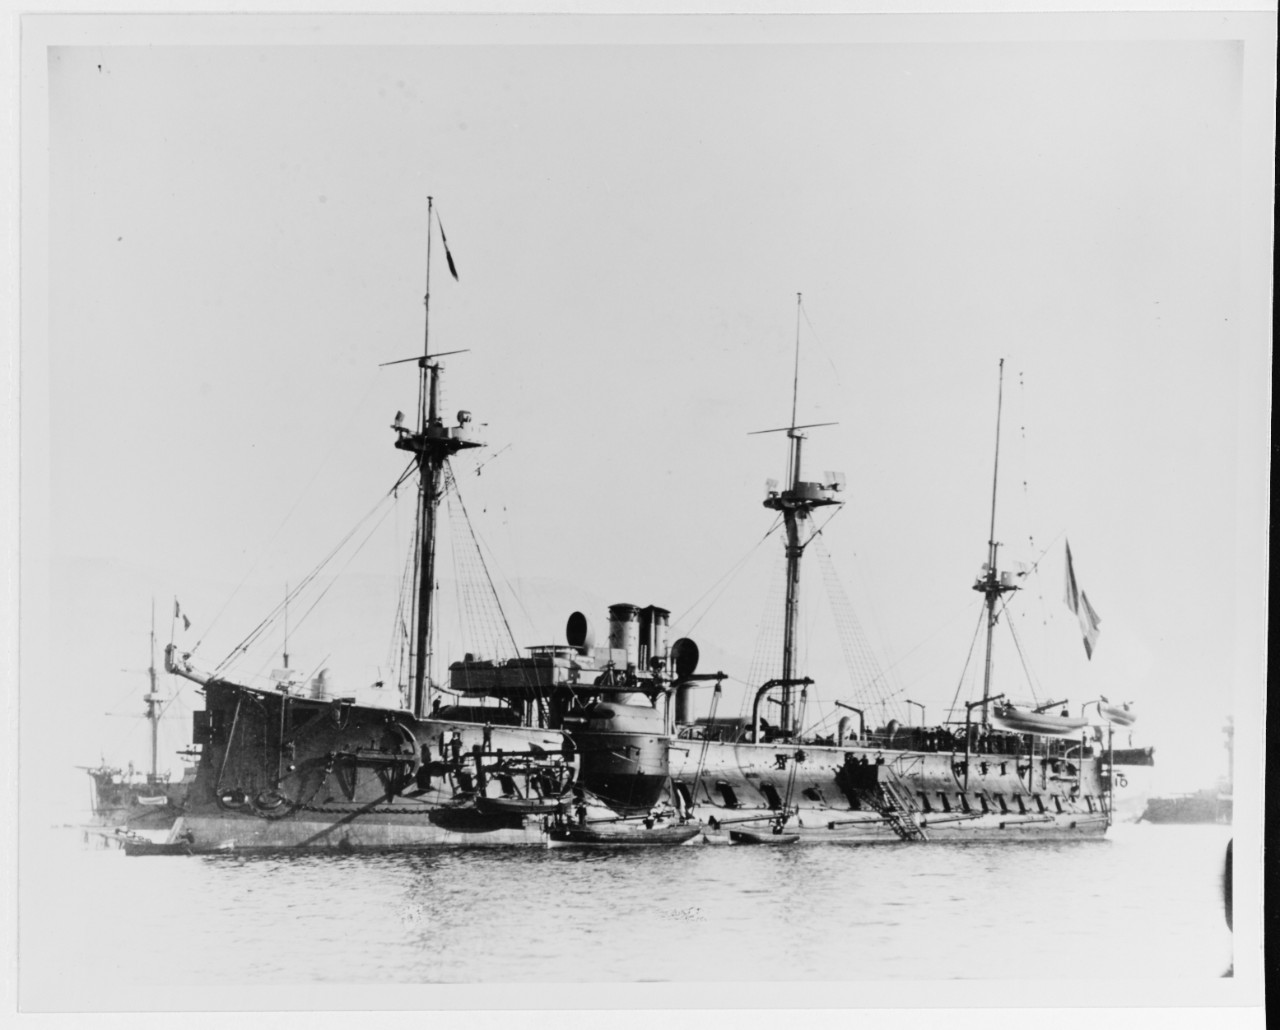 BAYARD (French armored cruiser, 1880-1904)